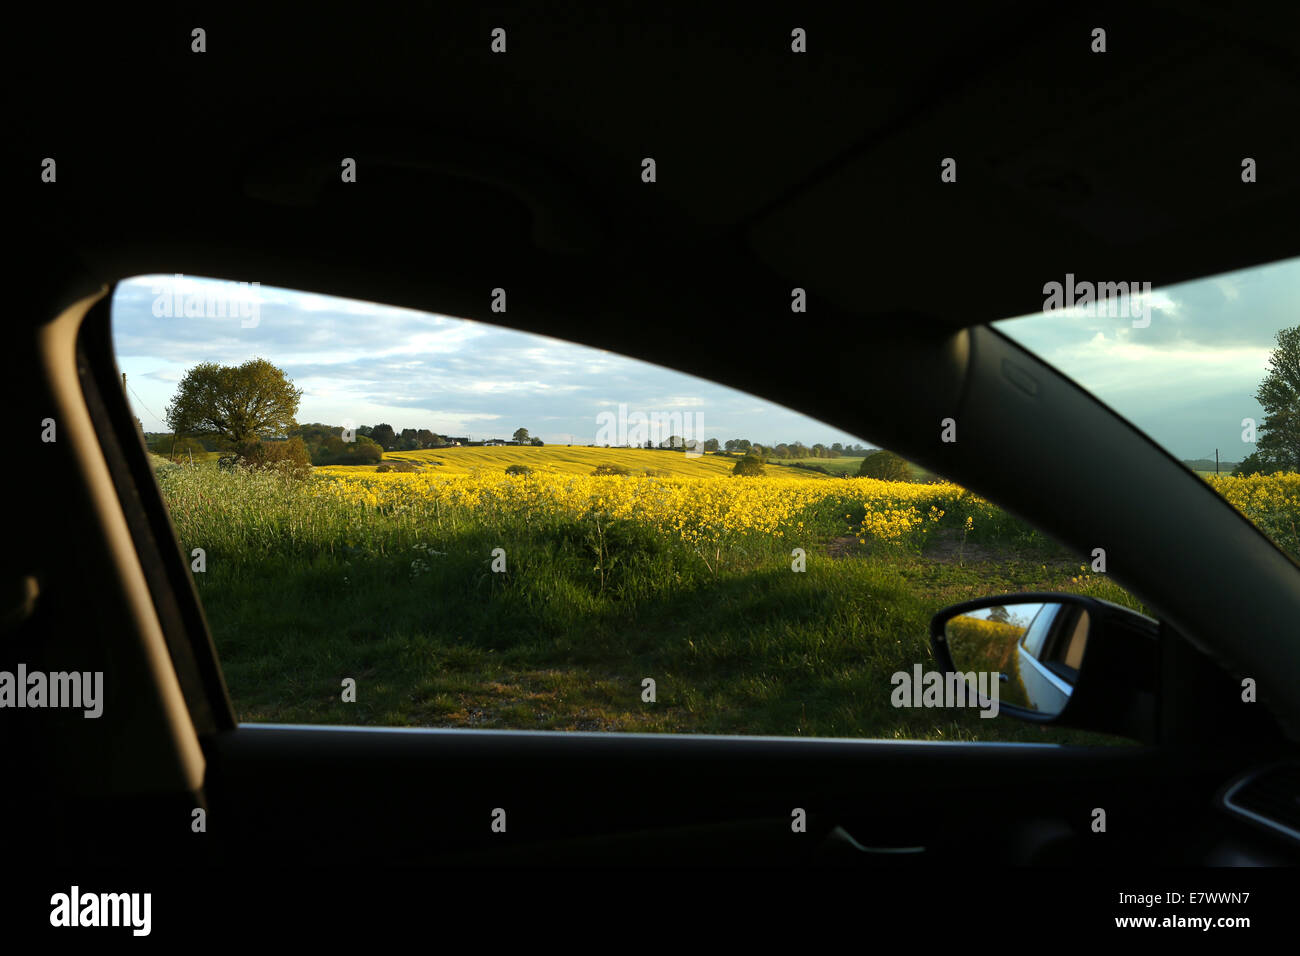 Blick auf britische Landschaft gerahmt durch PKW Auto Türfenster mit gelben Rapsöl Ernte-Landschaft Stockfoto